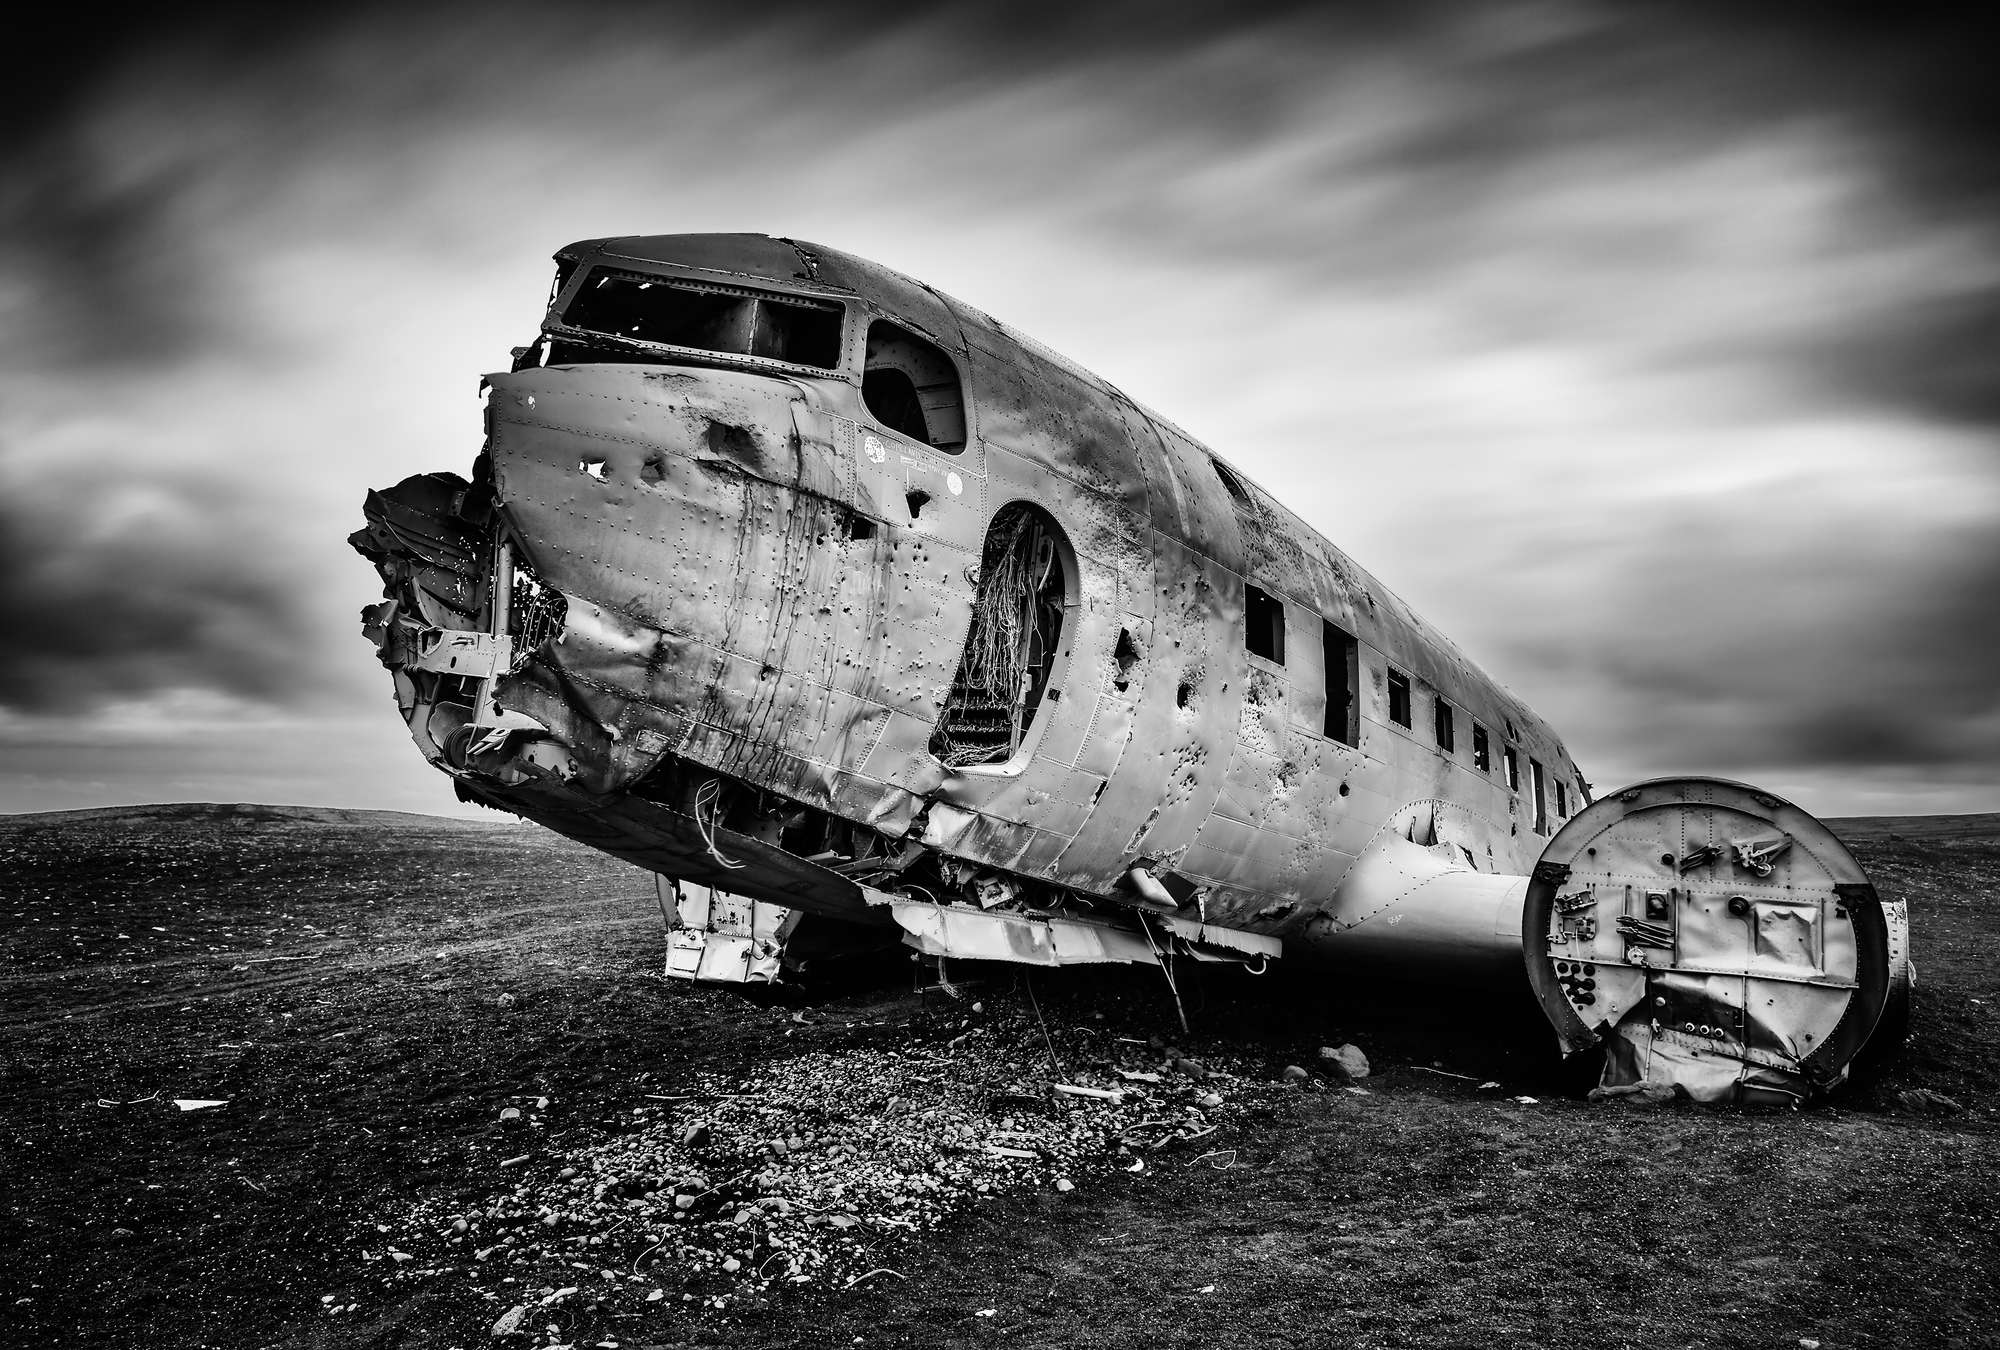             Fototapete Flugzeugwrack – Schwarz-Weiß
        